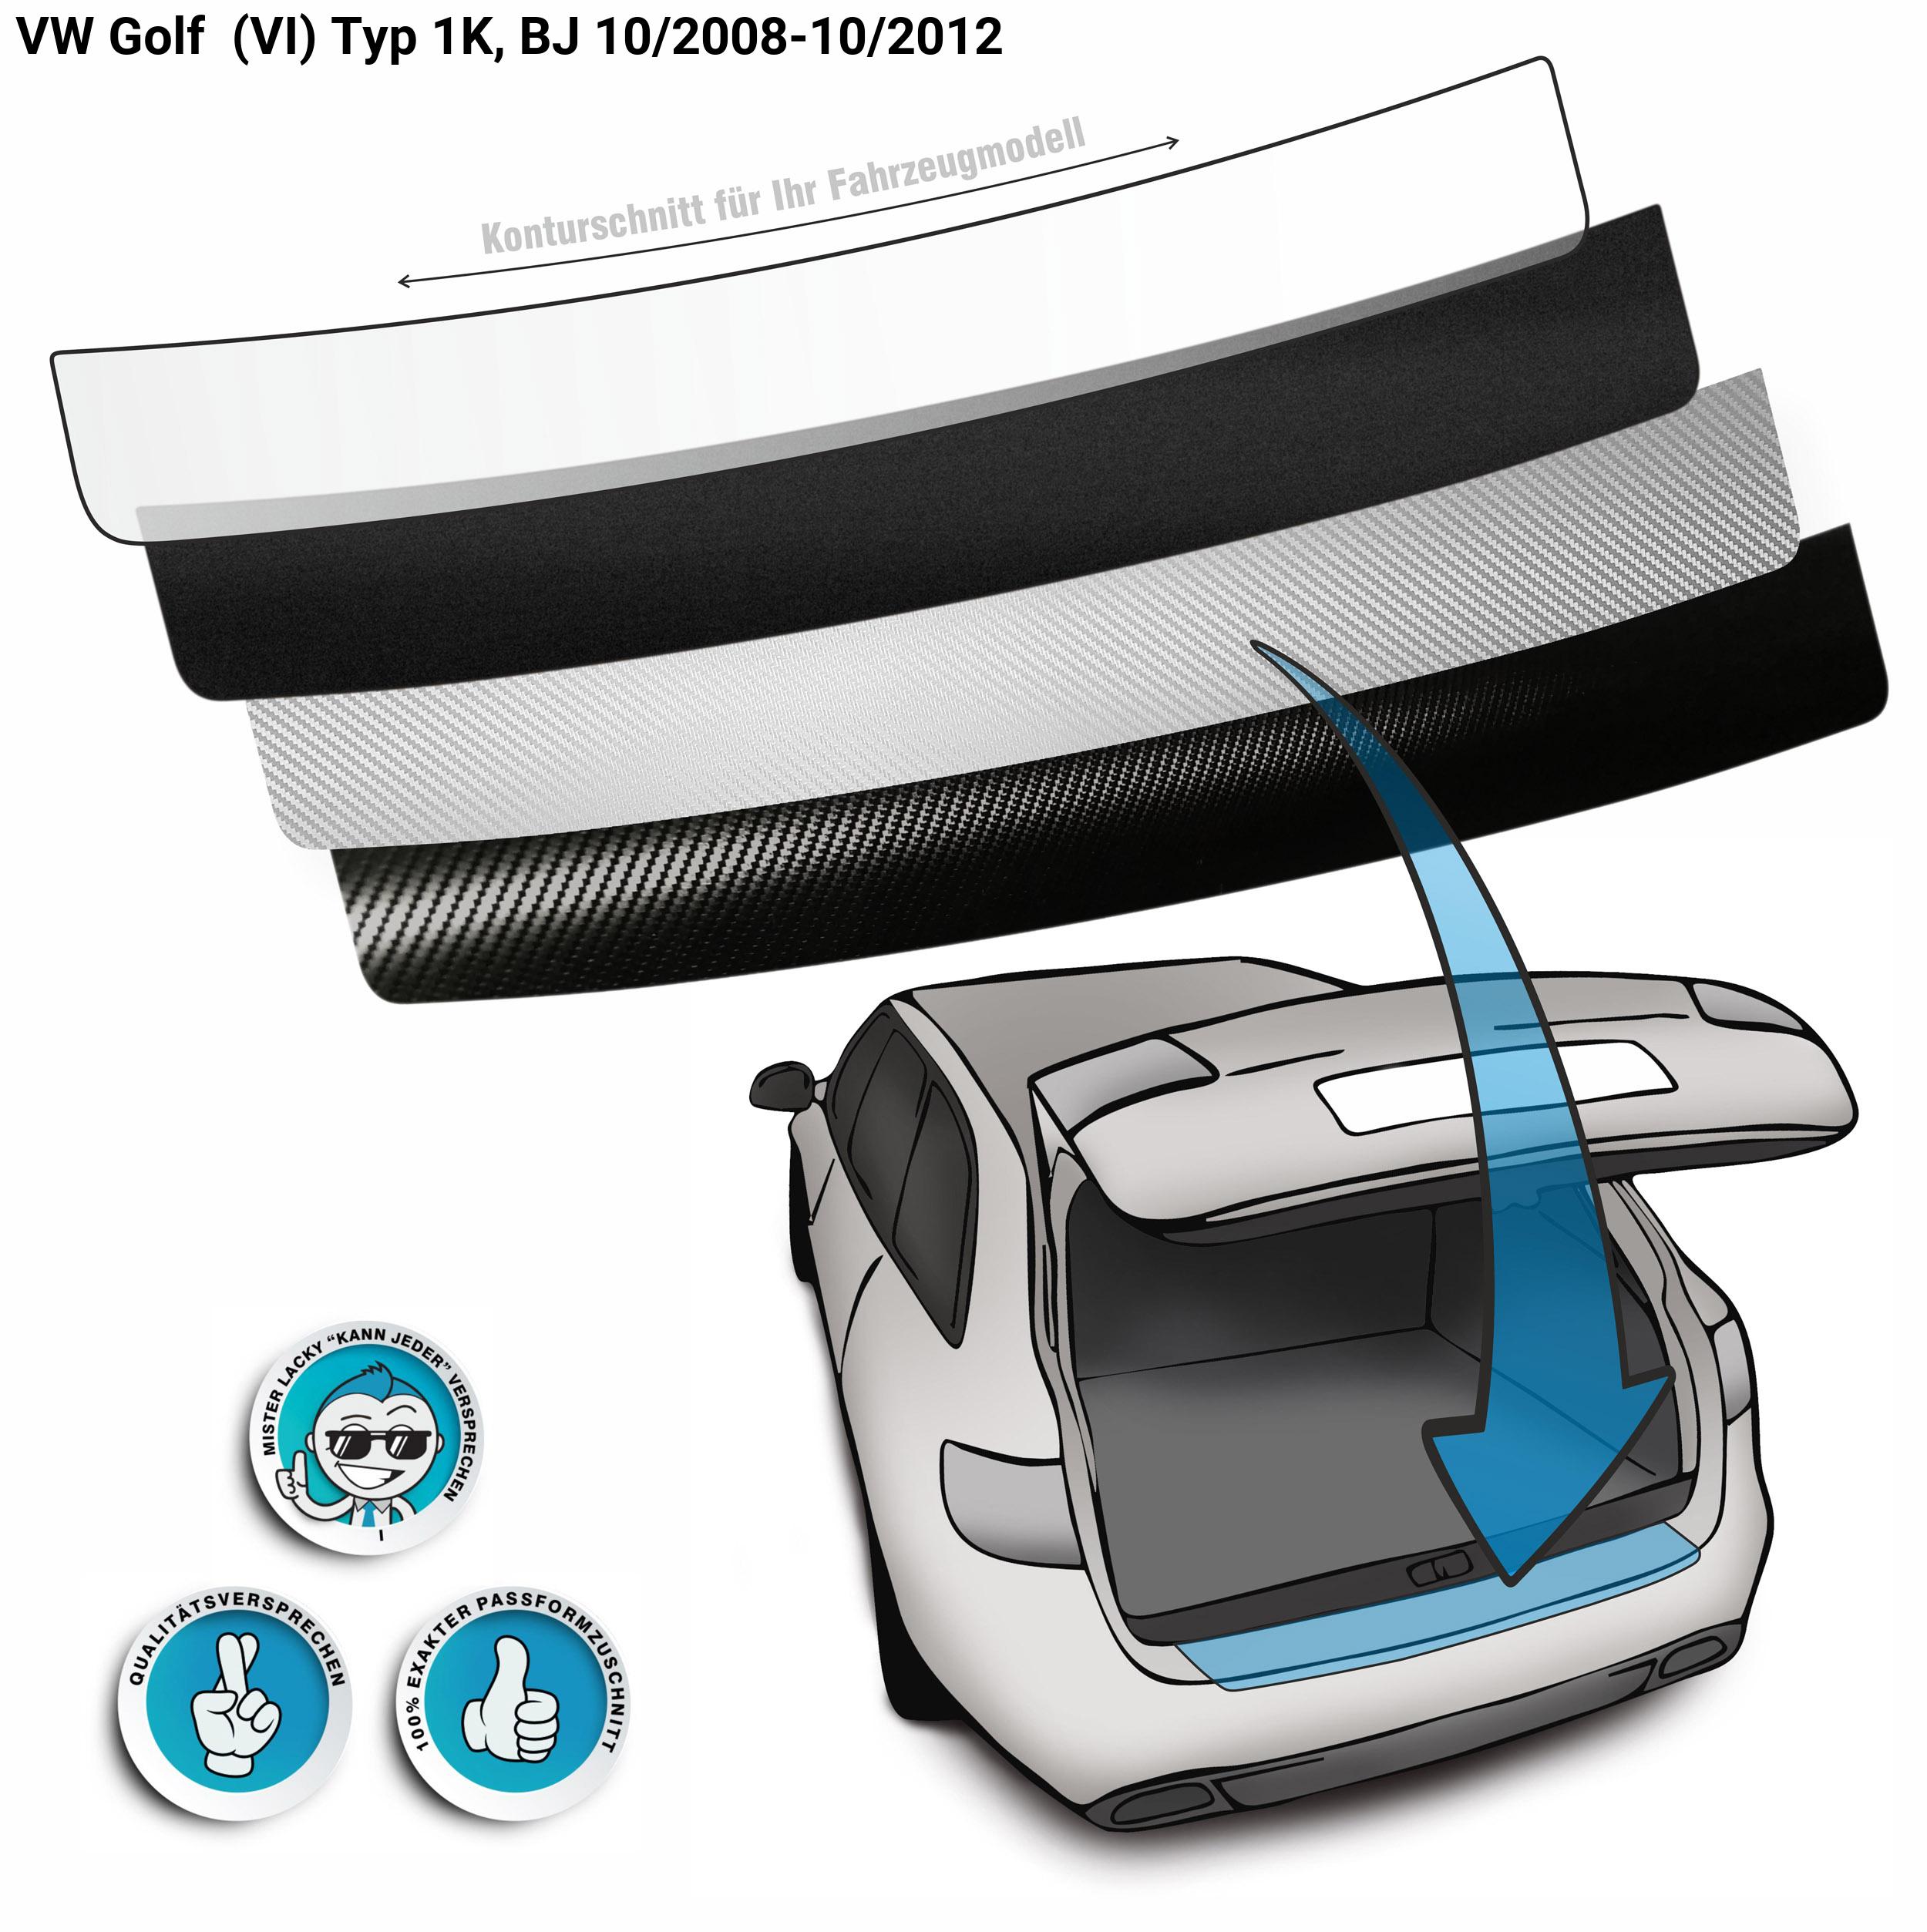 Schutzfolien-Set - transparent - VW Passat CC ab 2012, 59,95 €